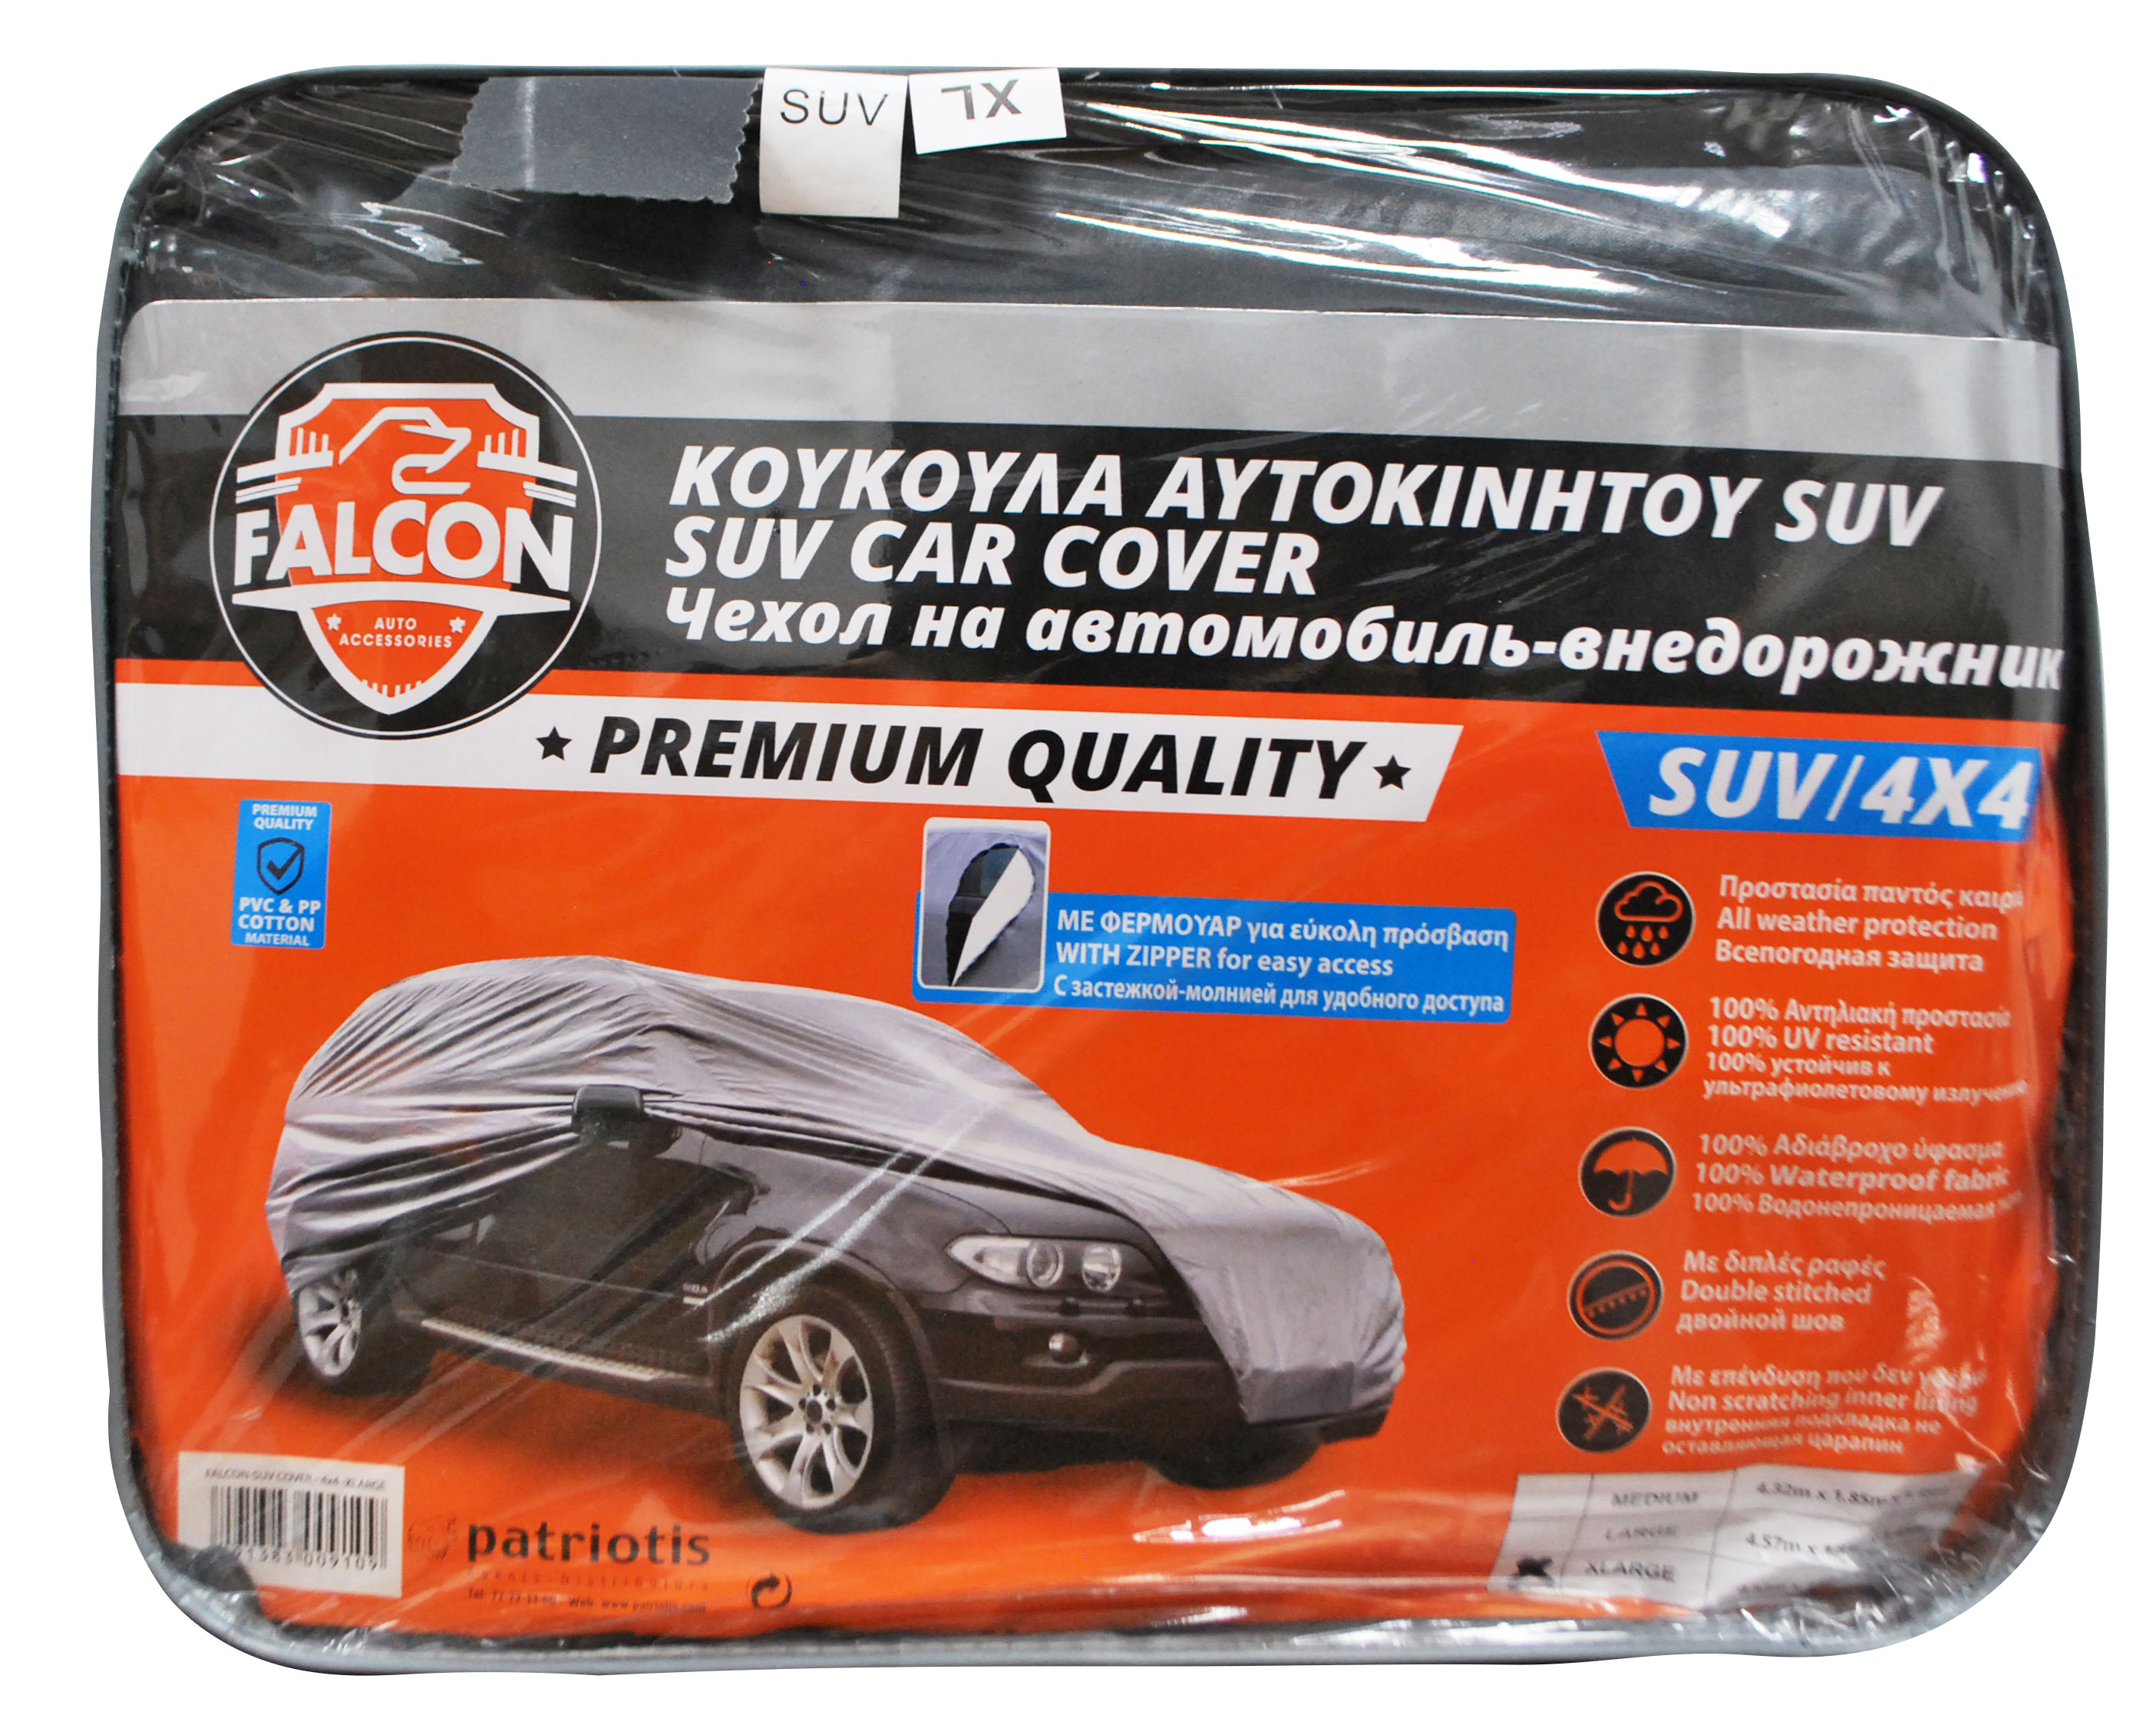 FALCON SUV CAR COVER XLARGE 500X195X155CM